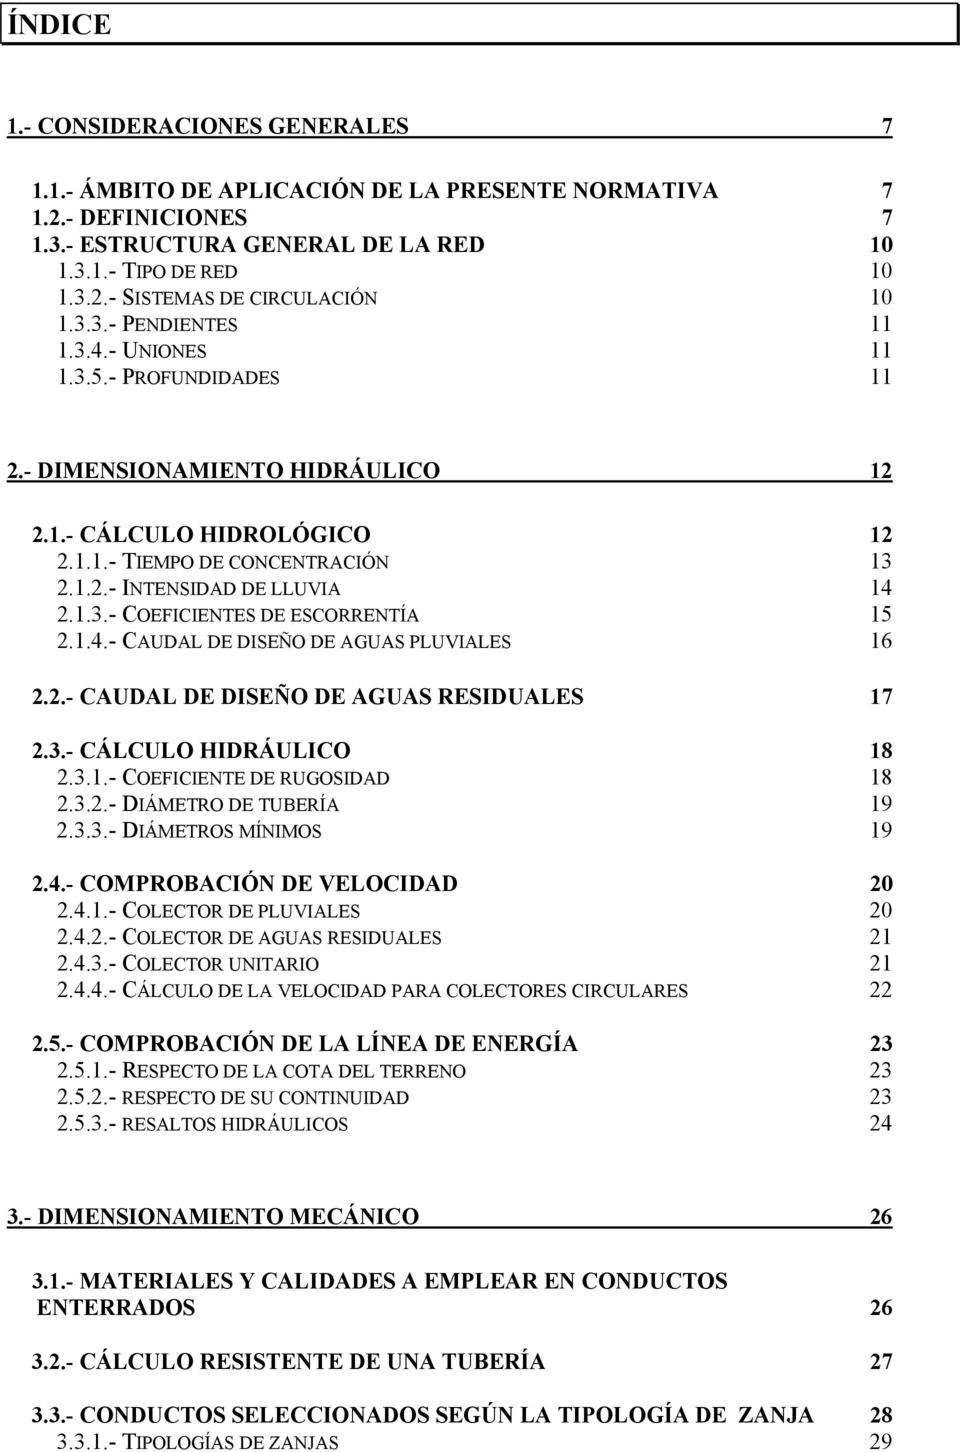 1.4.- CAUDAL DE DISEÑO DE AGUAS PLUVIALES 16 2.2.- CAUDAL DE DISEÑO DE AGUAS RESIDUALES 17 2.3.- CÁLCULO HIDRÁULICO 18 2.3.1.- COEFICIENTE DE RUGOSIDAD 18 2.3.2.- DIÁMETRO DE TUBERÍA 19 2.3.3.- DIÁMETROS MÍNIMOS 19 2.